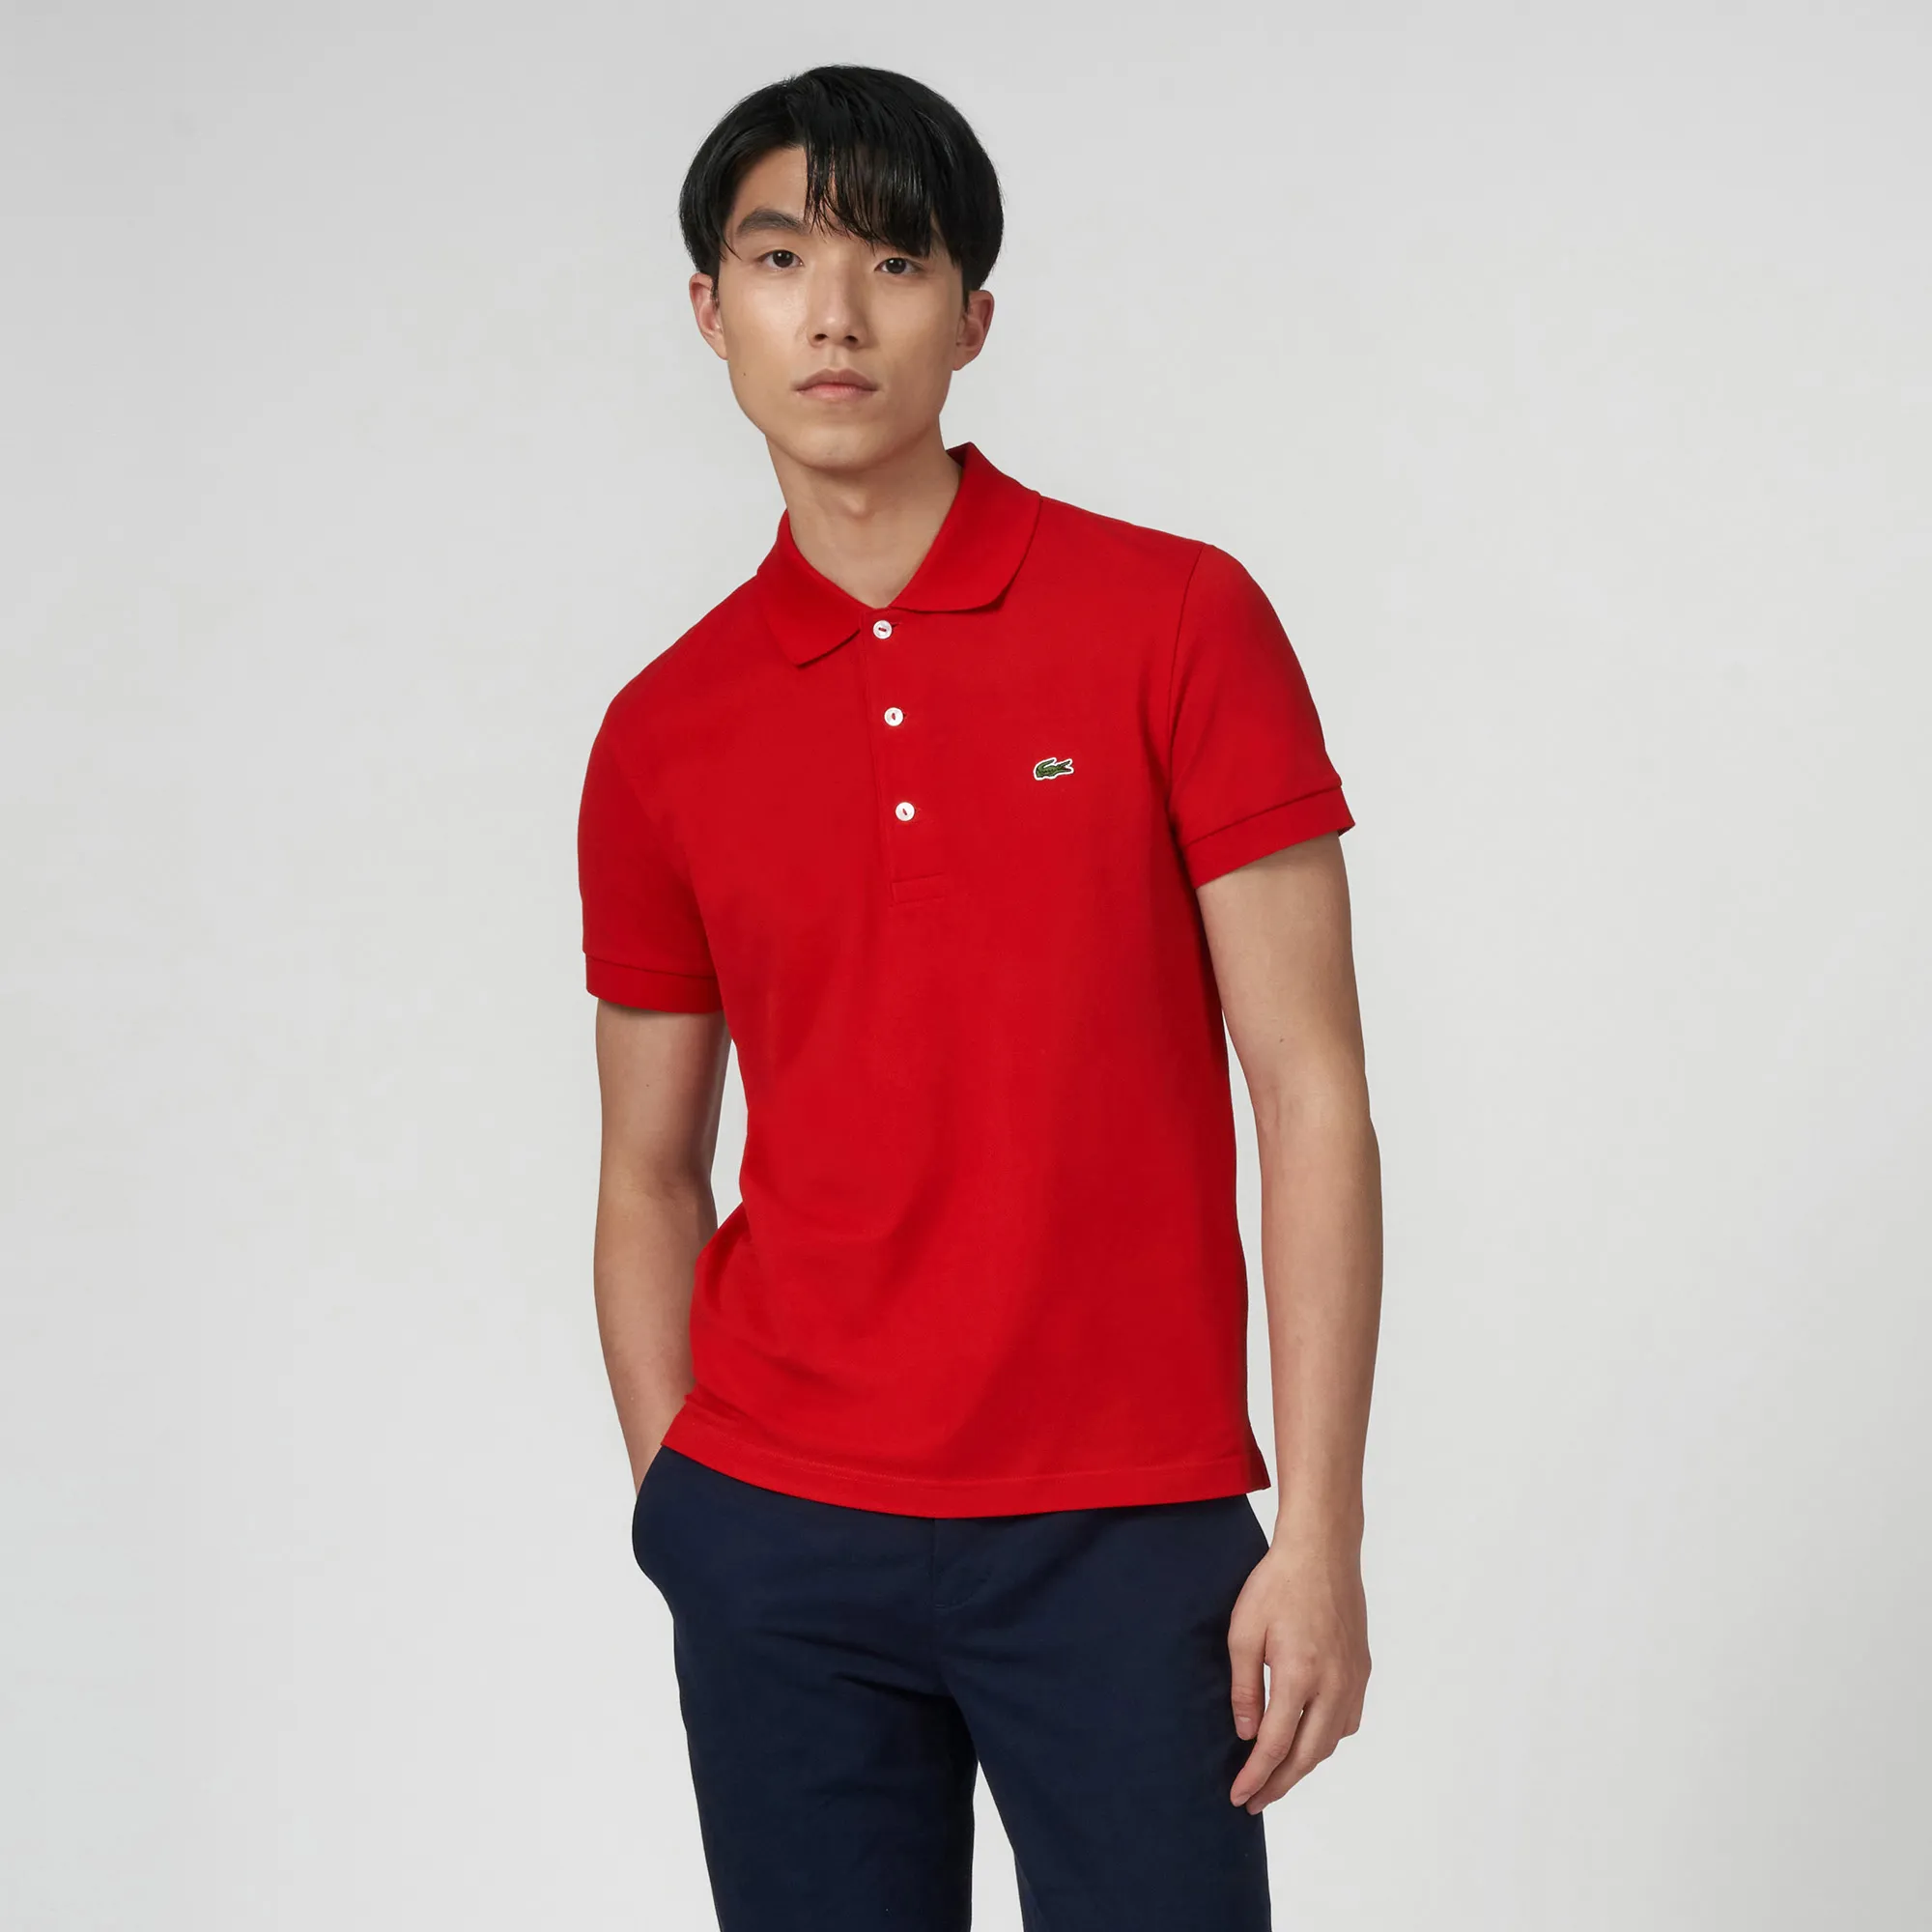 Men’s Lacoste Slim Fit Stretch Cotton Piqué Polo Shirt